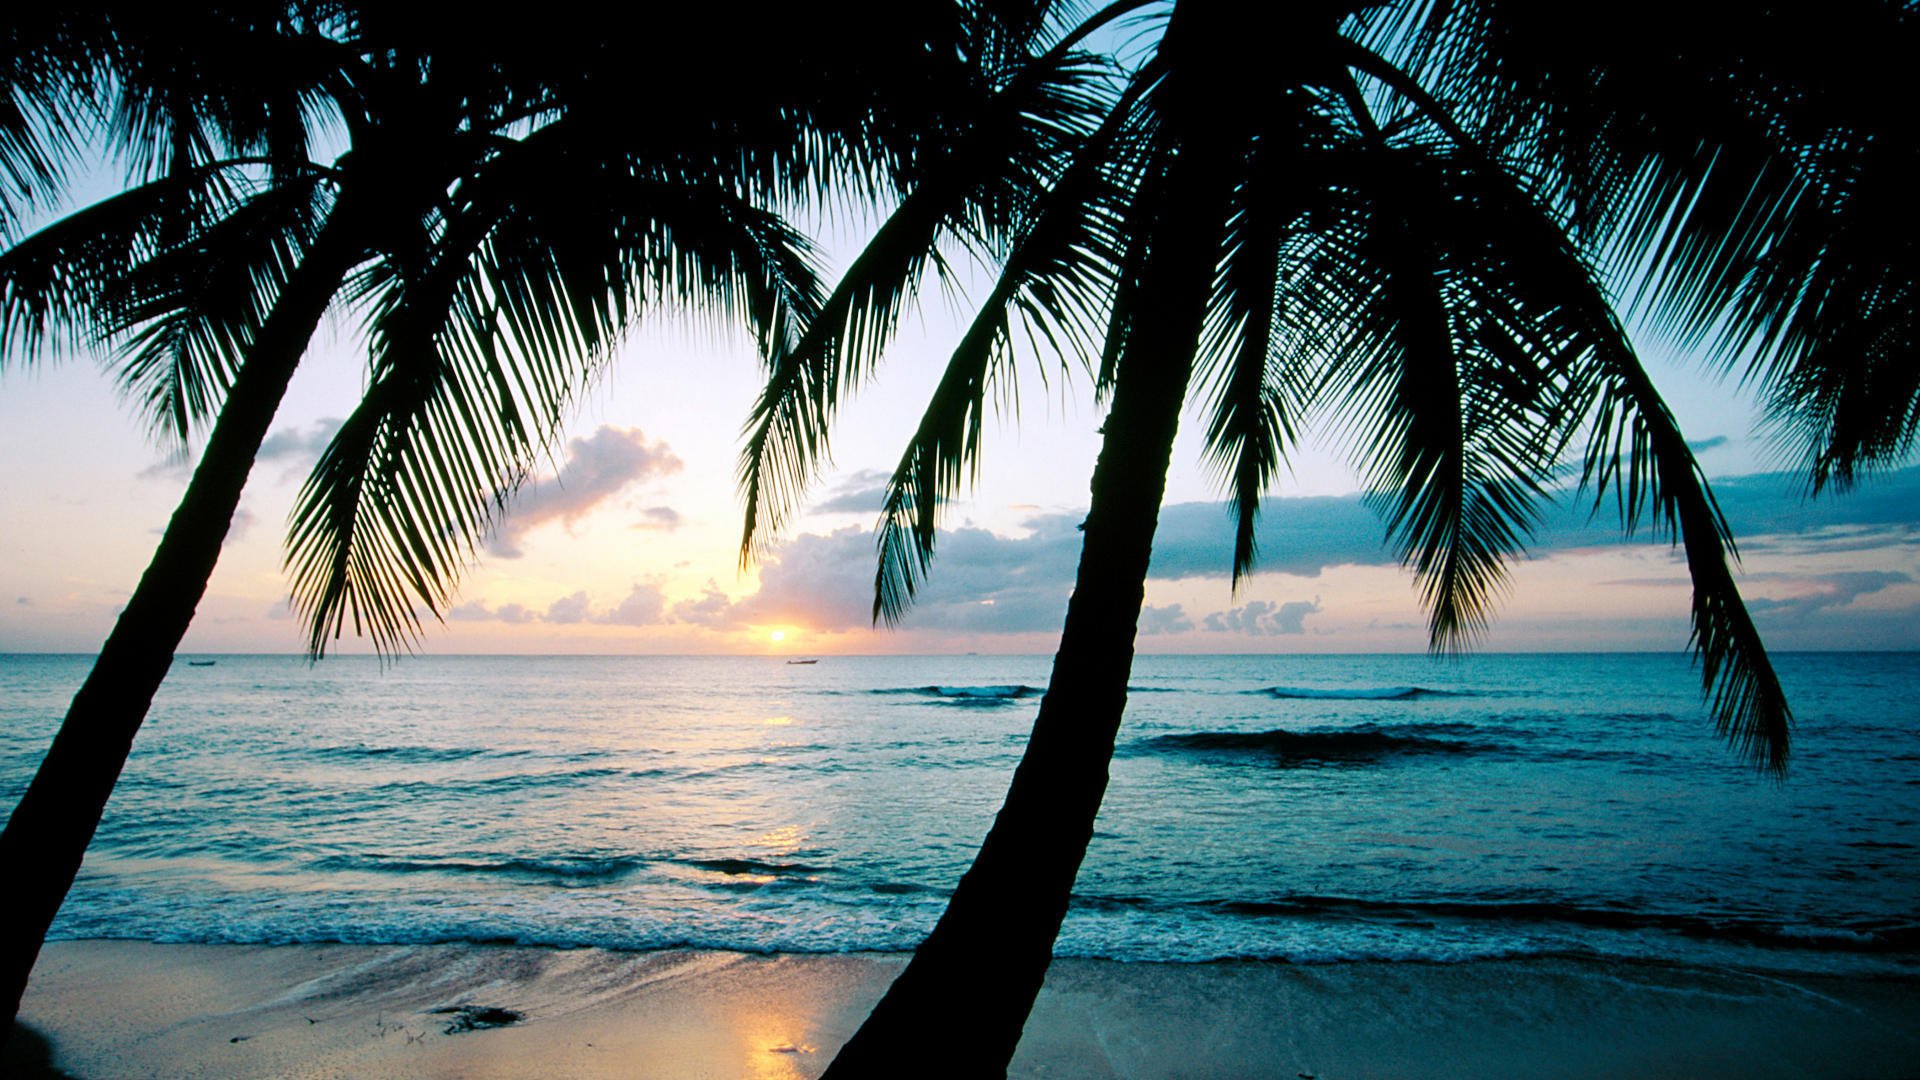 Обои с тегом:закат, океан, пальмы, карибы, остров барбадос, царь \ 'ы ...